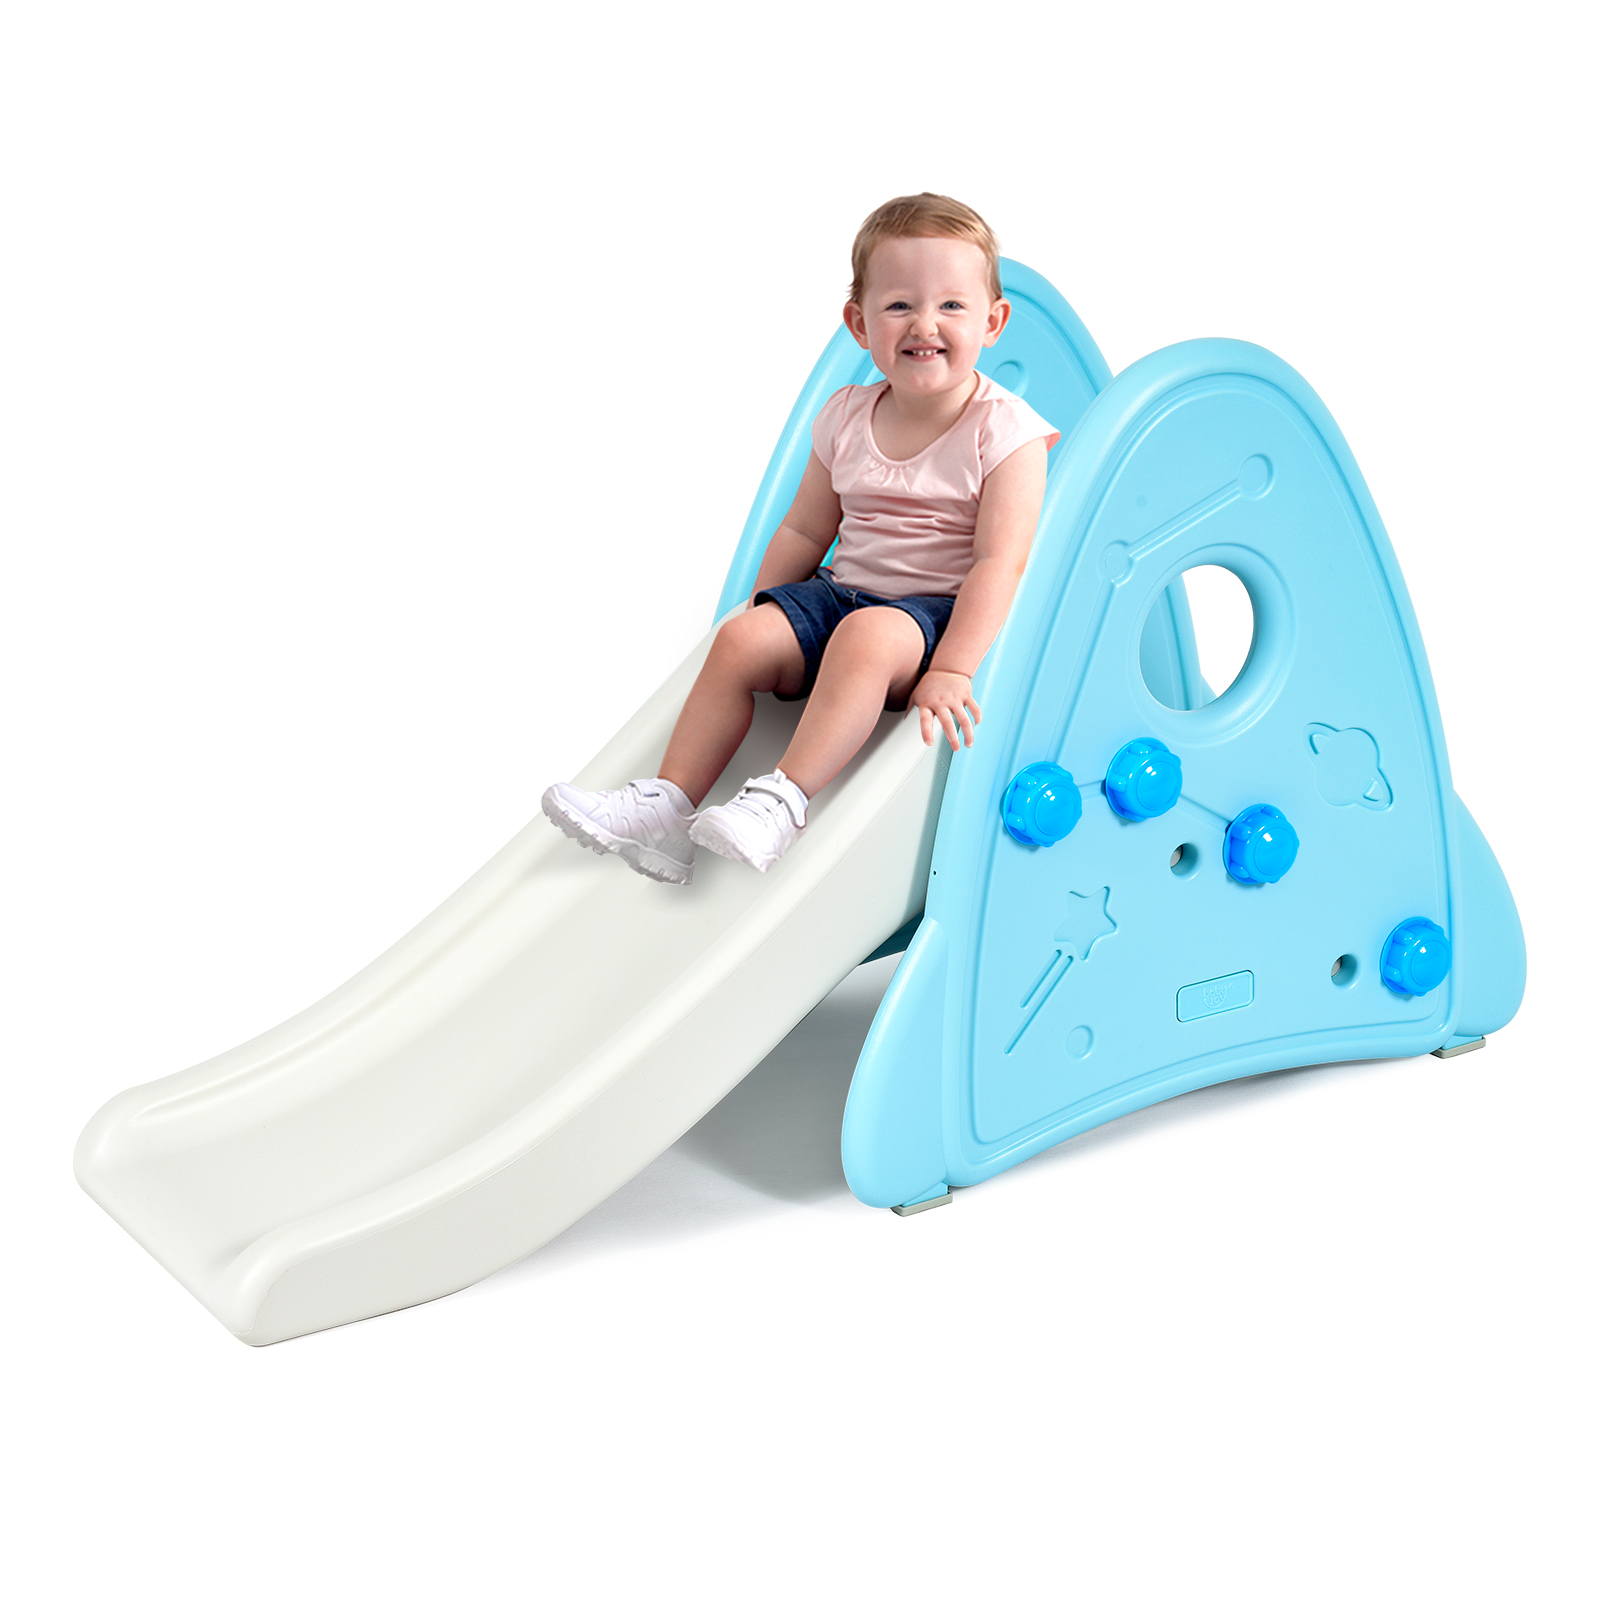 Topbuy Kids Slide Toys Indoor and Outdoor Climber Slide Set for Boys Girls Blue